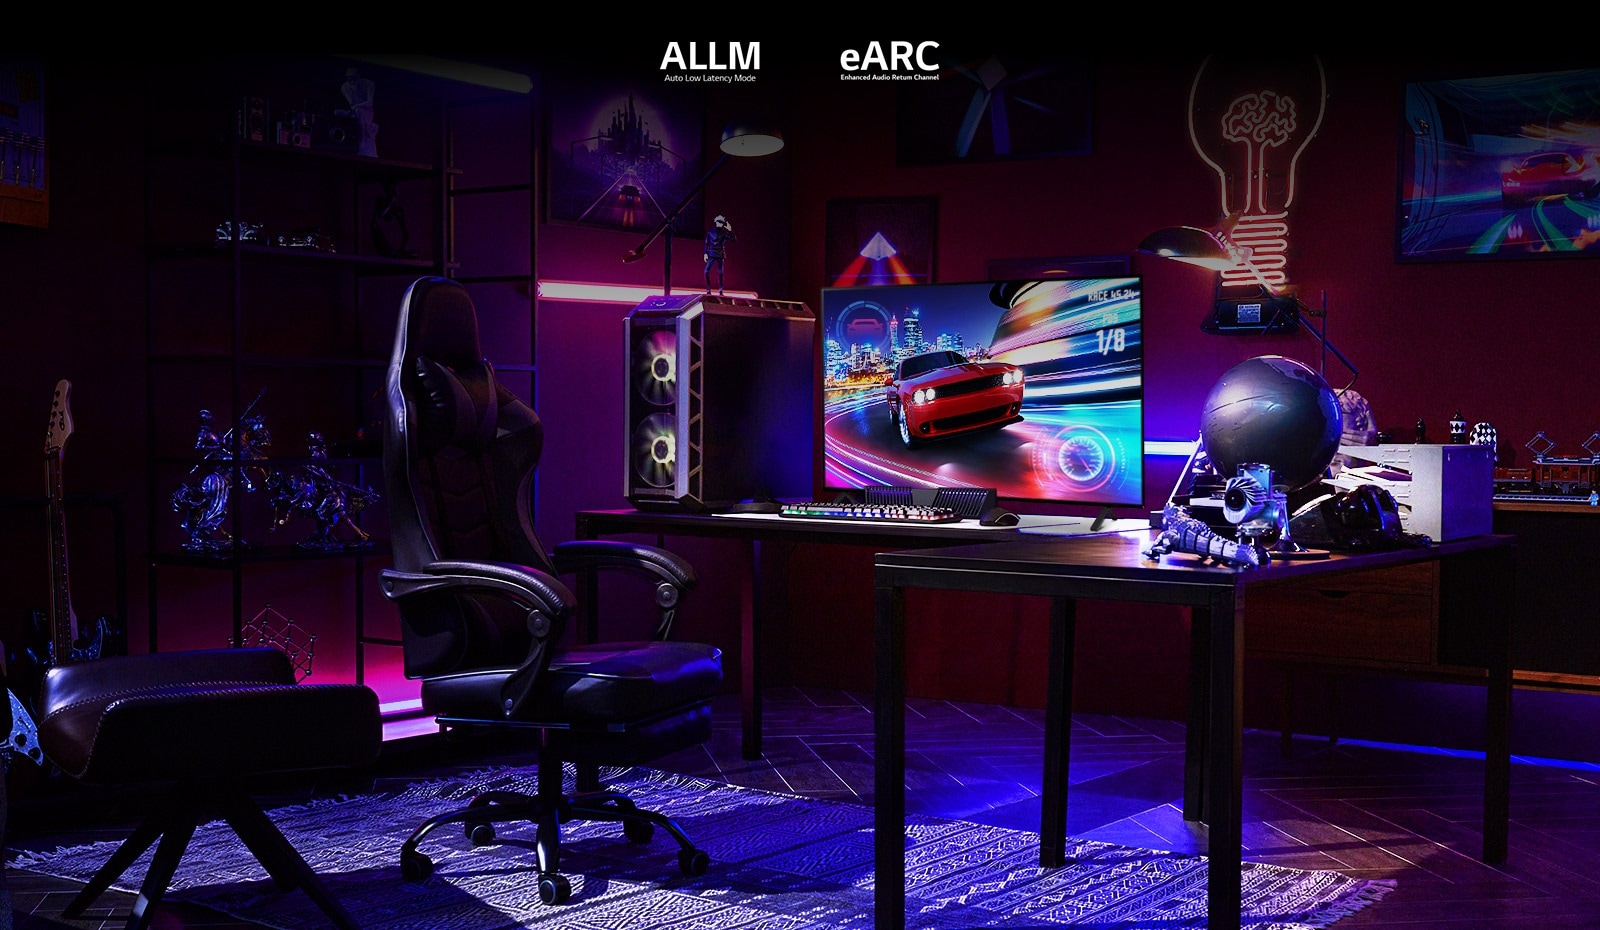 Một anh chàng chơi một trò chơi lái xe trong một phòng chơi game với ánh sáng RGB màu hồng, xanh dương và tím, và một bộ sưu tập các nhân vật hành động.